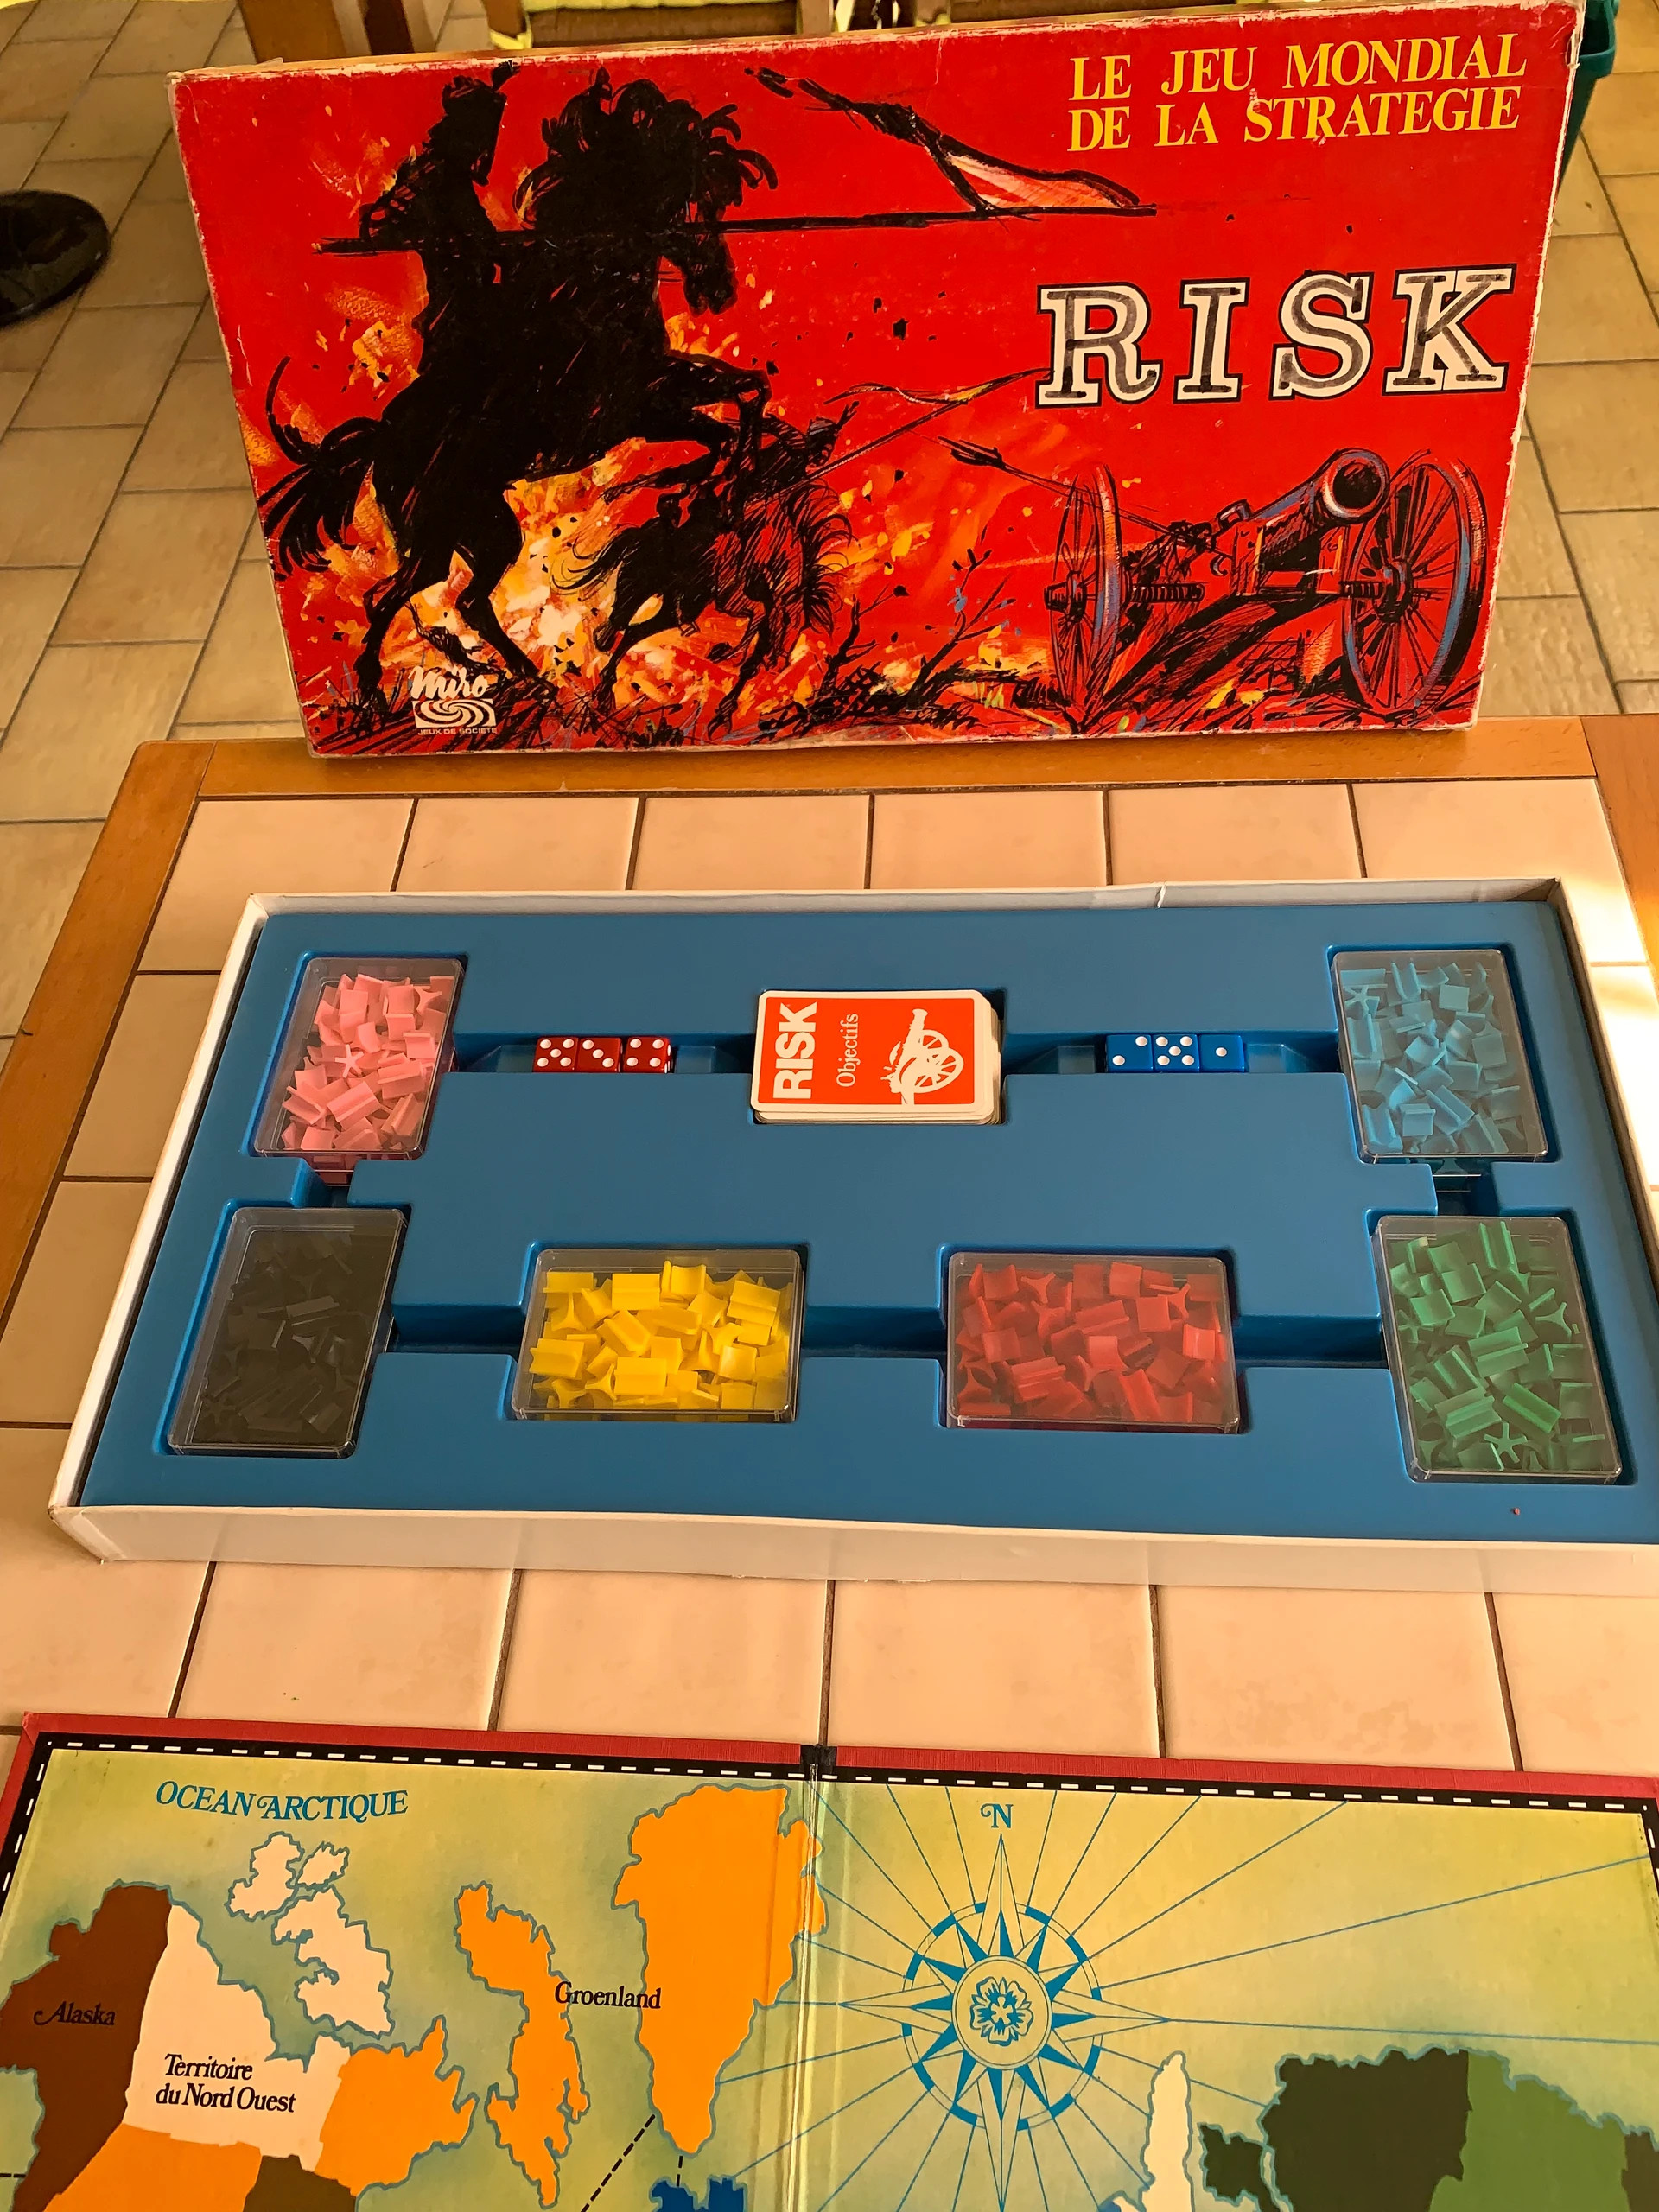 Risk - Jeu de societe de Stratégie - Jeu de Plateau - Jeux